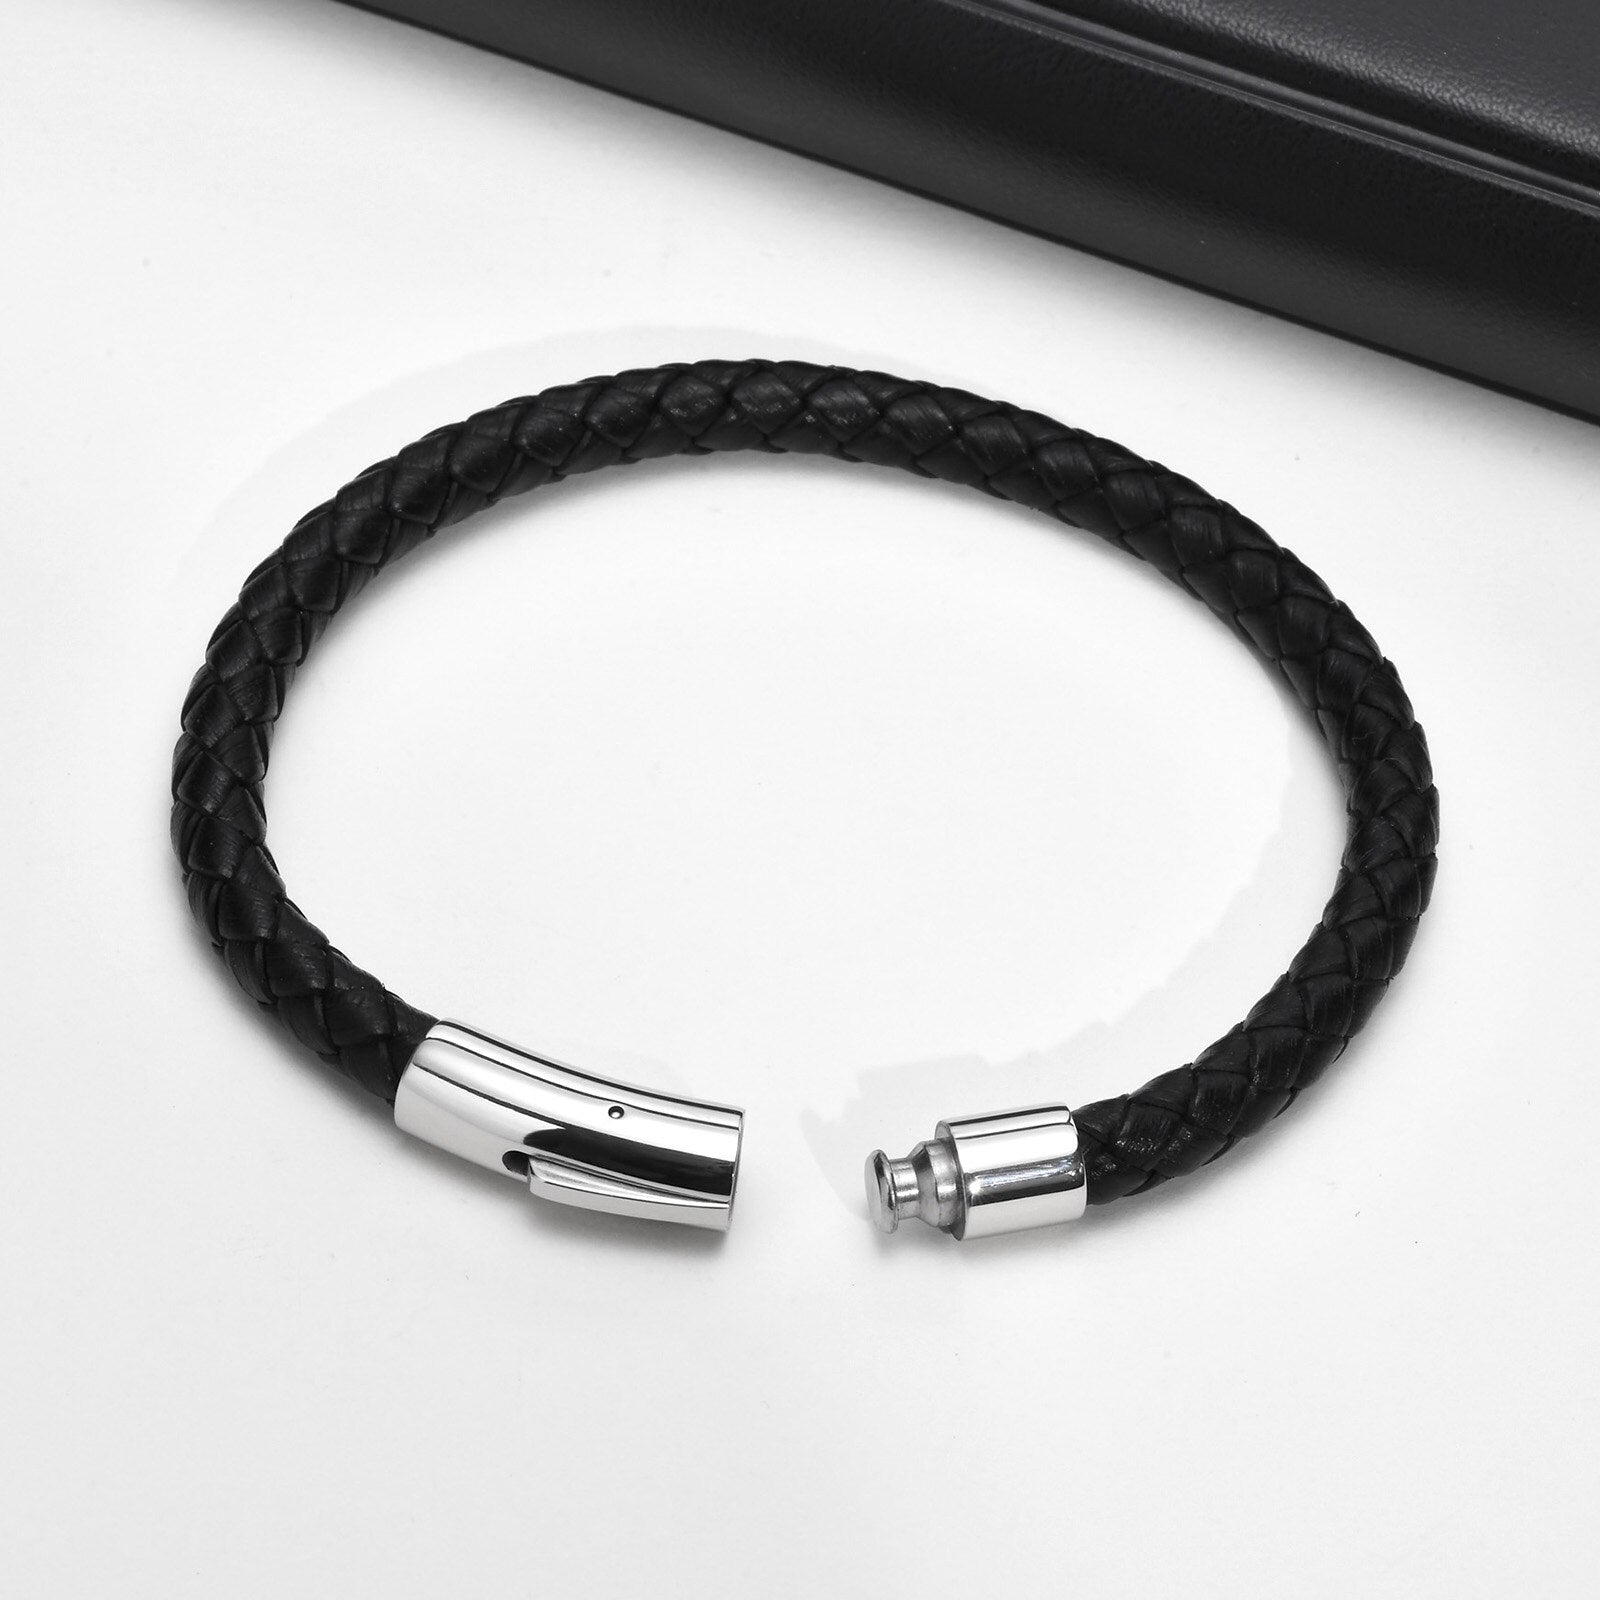 Frasco Braided Leather Bracelet